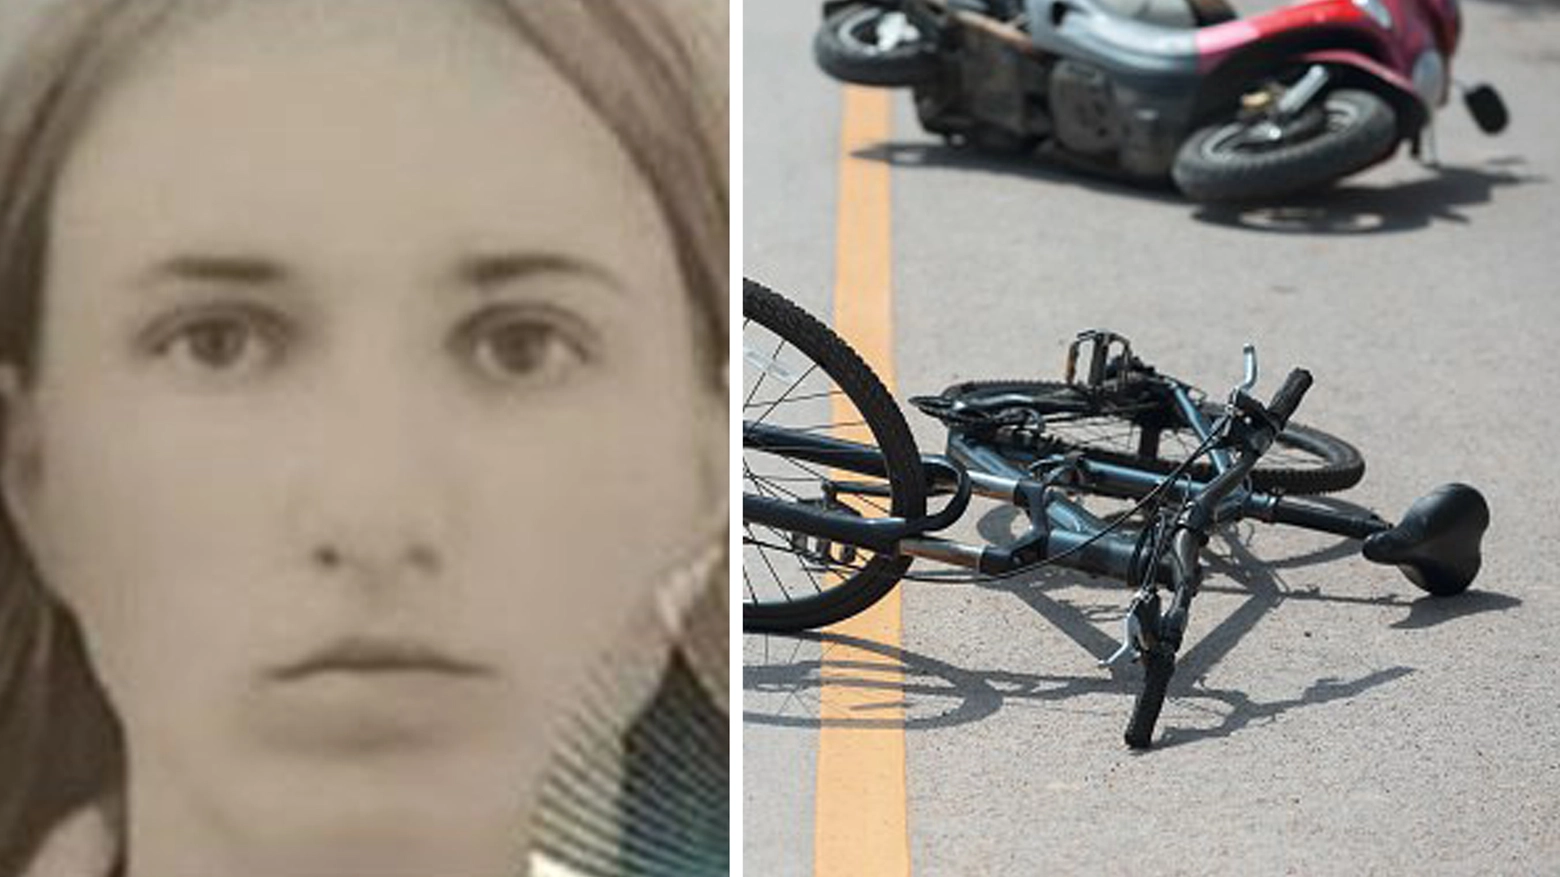 Valeria Spinu, 19 anni, è stata travolta mentre attraversava l’Adriatica in provincia di Rovigo. Illesa la piccola di 3 anni che era con lei. Il sindaco Raito: “Una tragedia enorme”